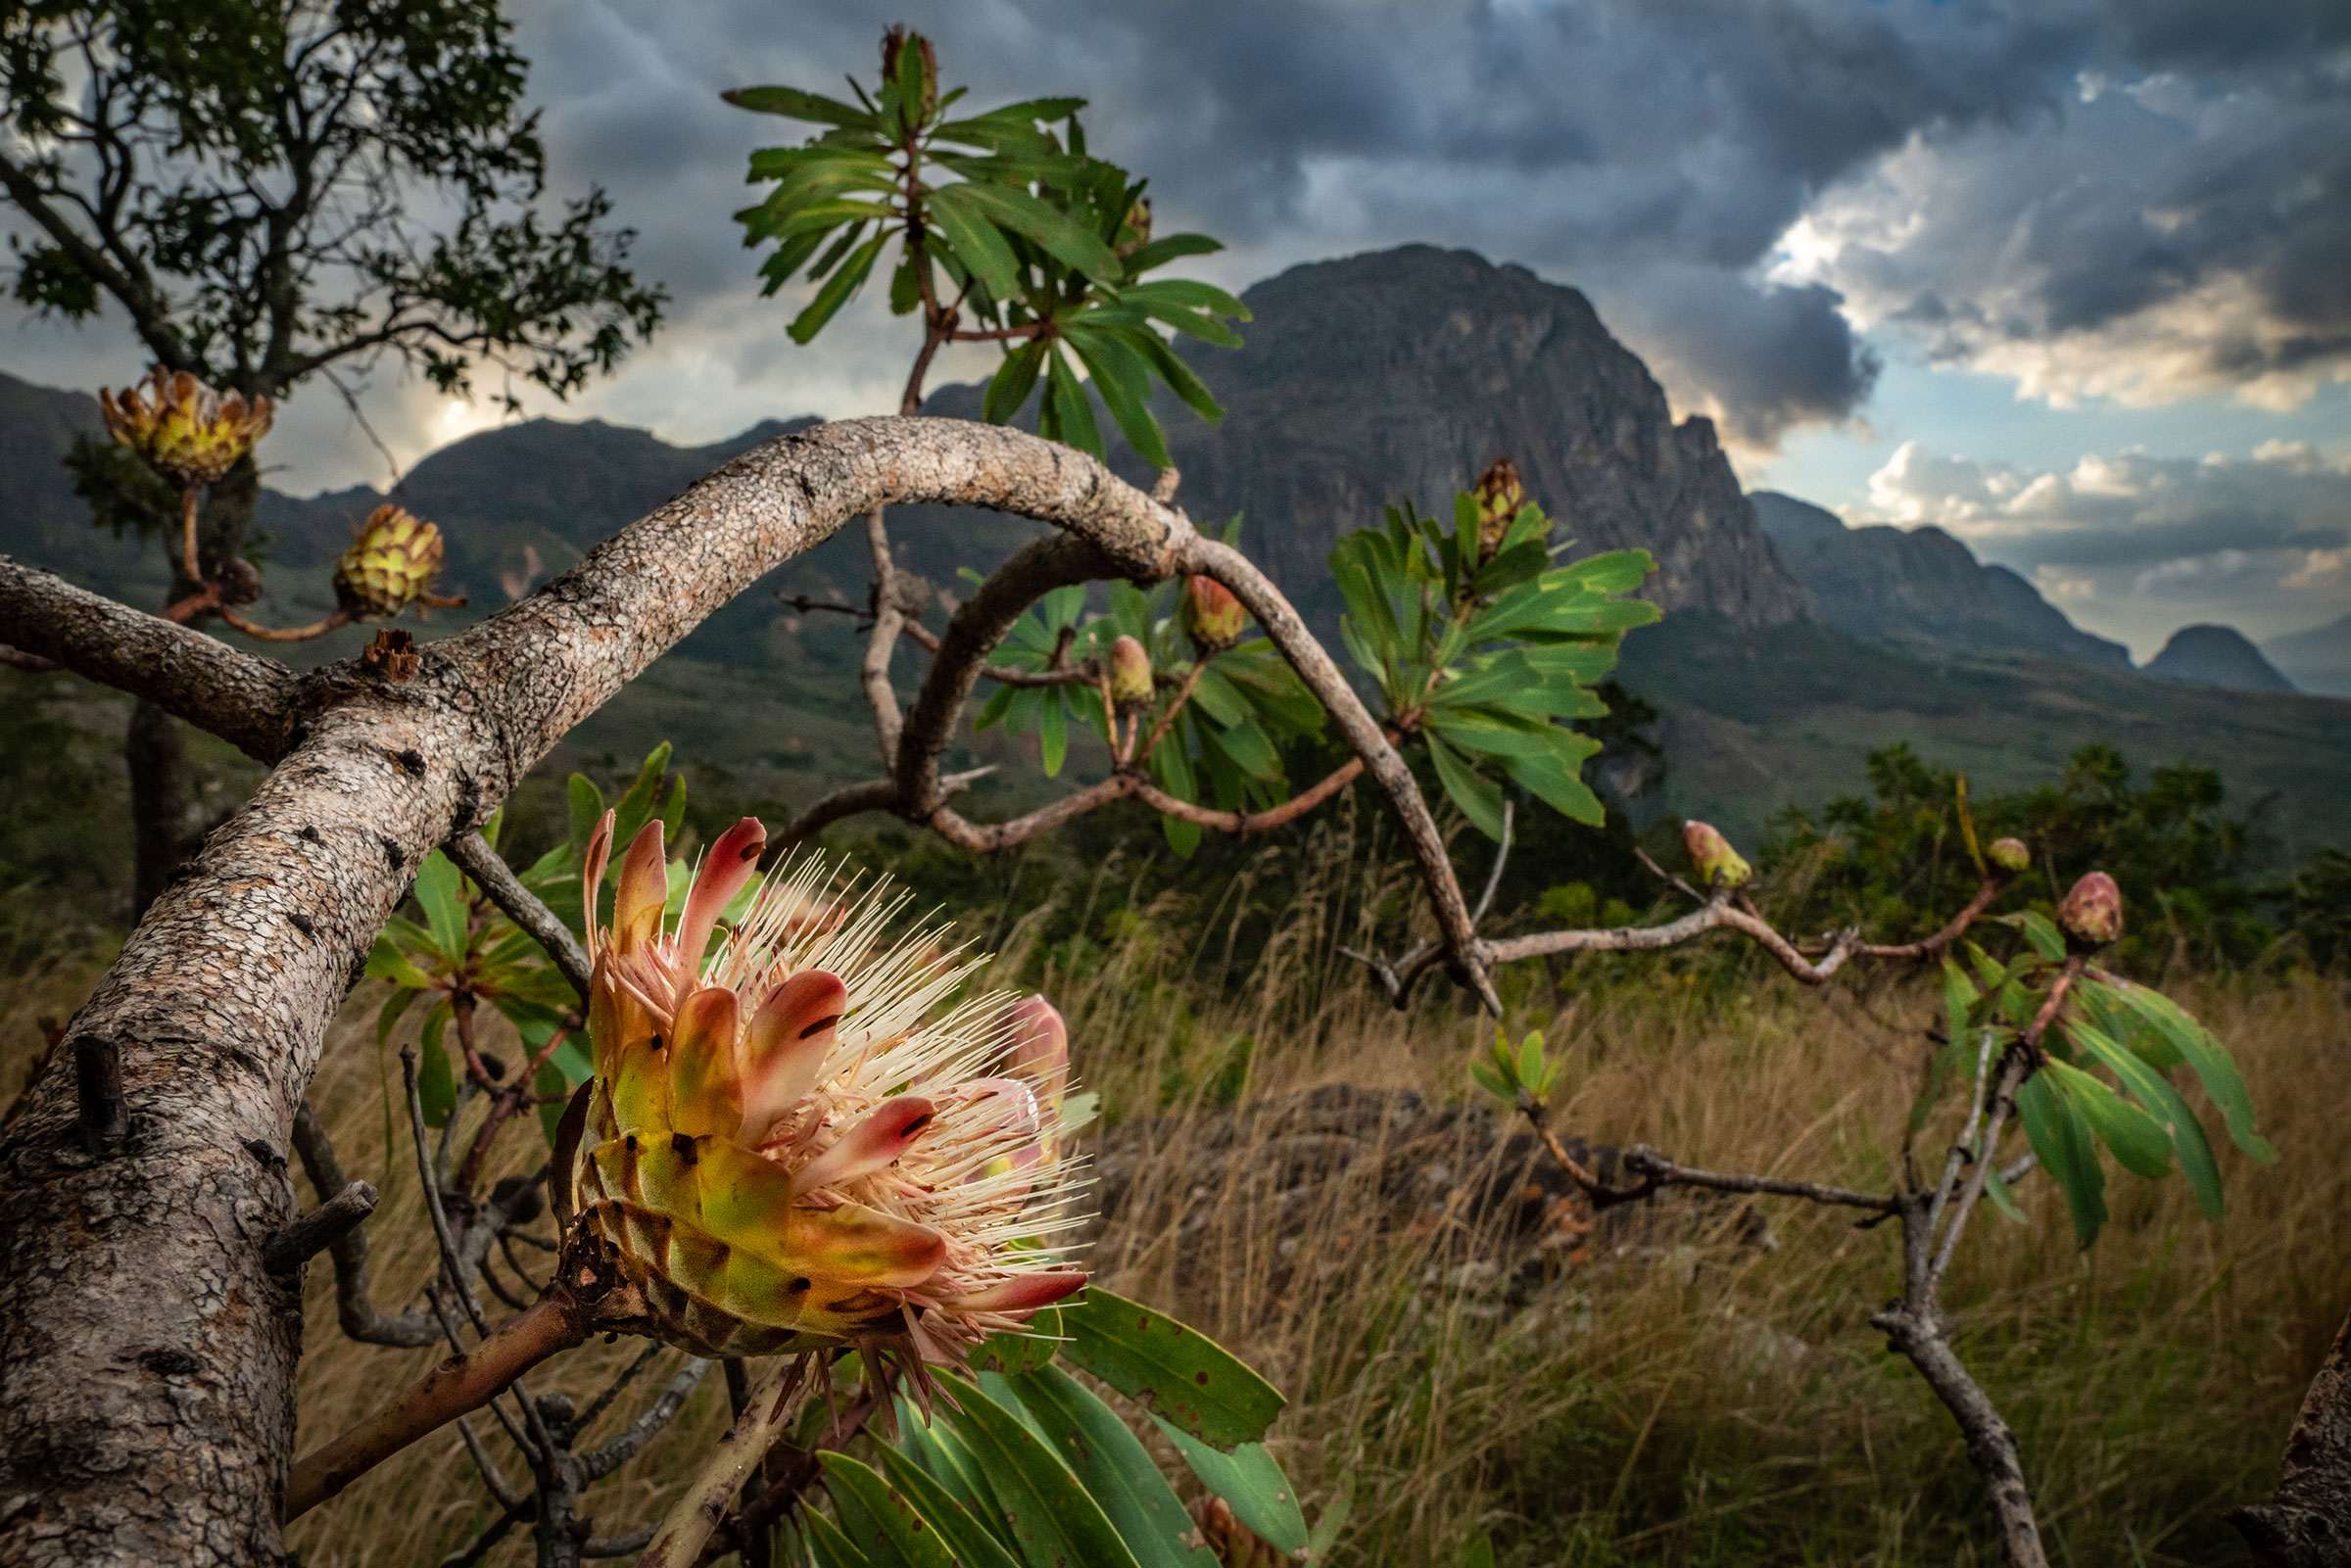 A Manica sugarbush in Chimanimani National Park, Mozambique. (Jen Guyton)